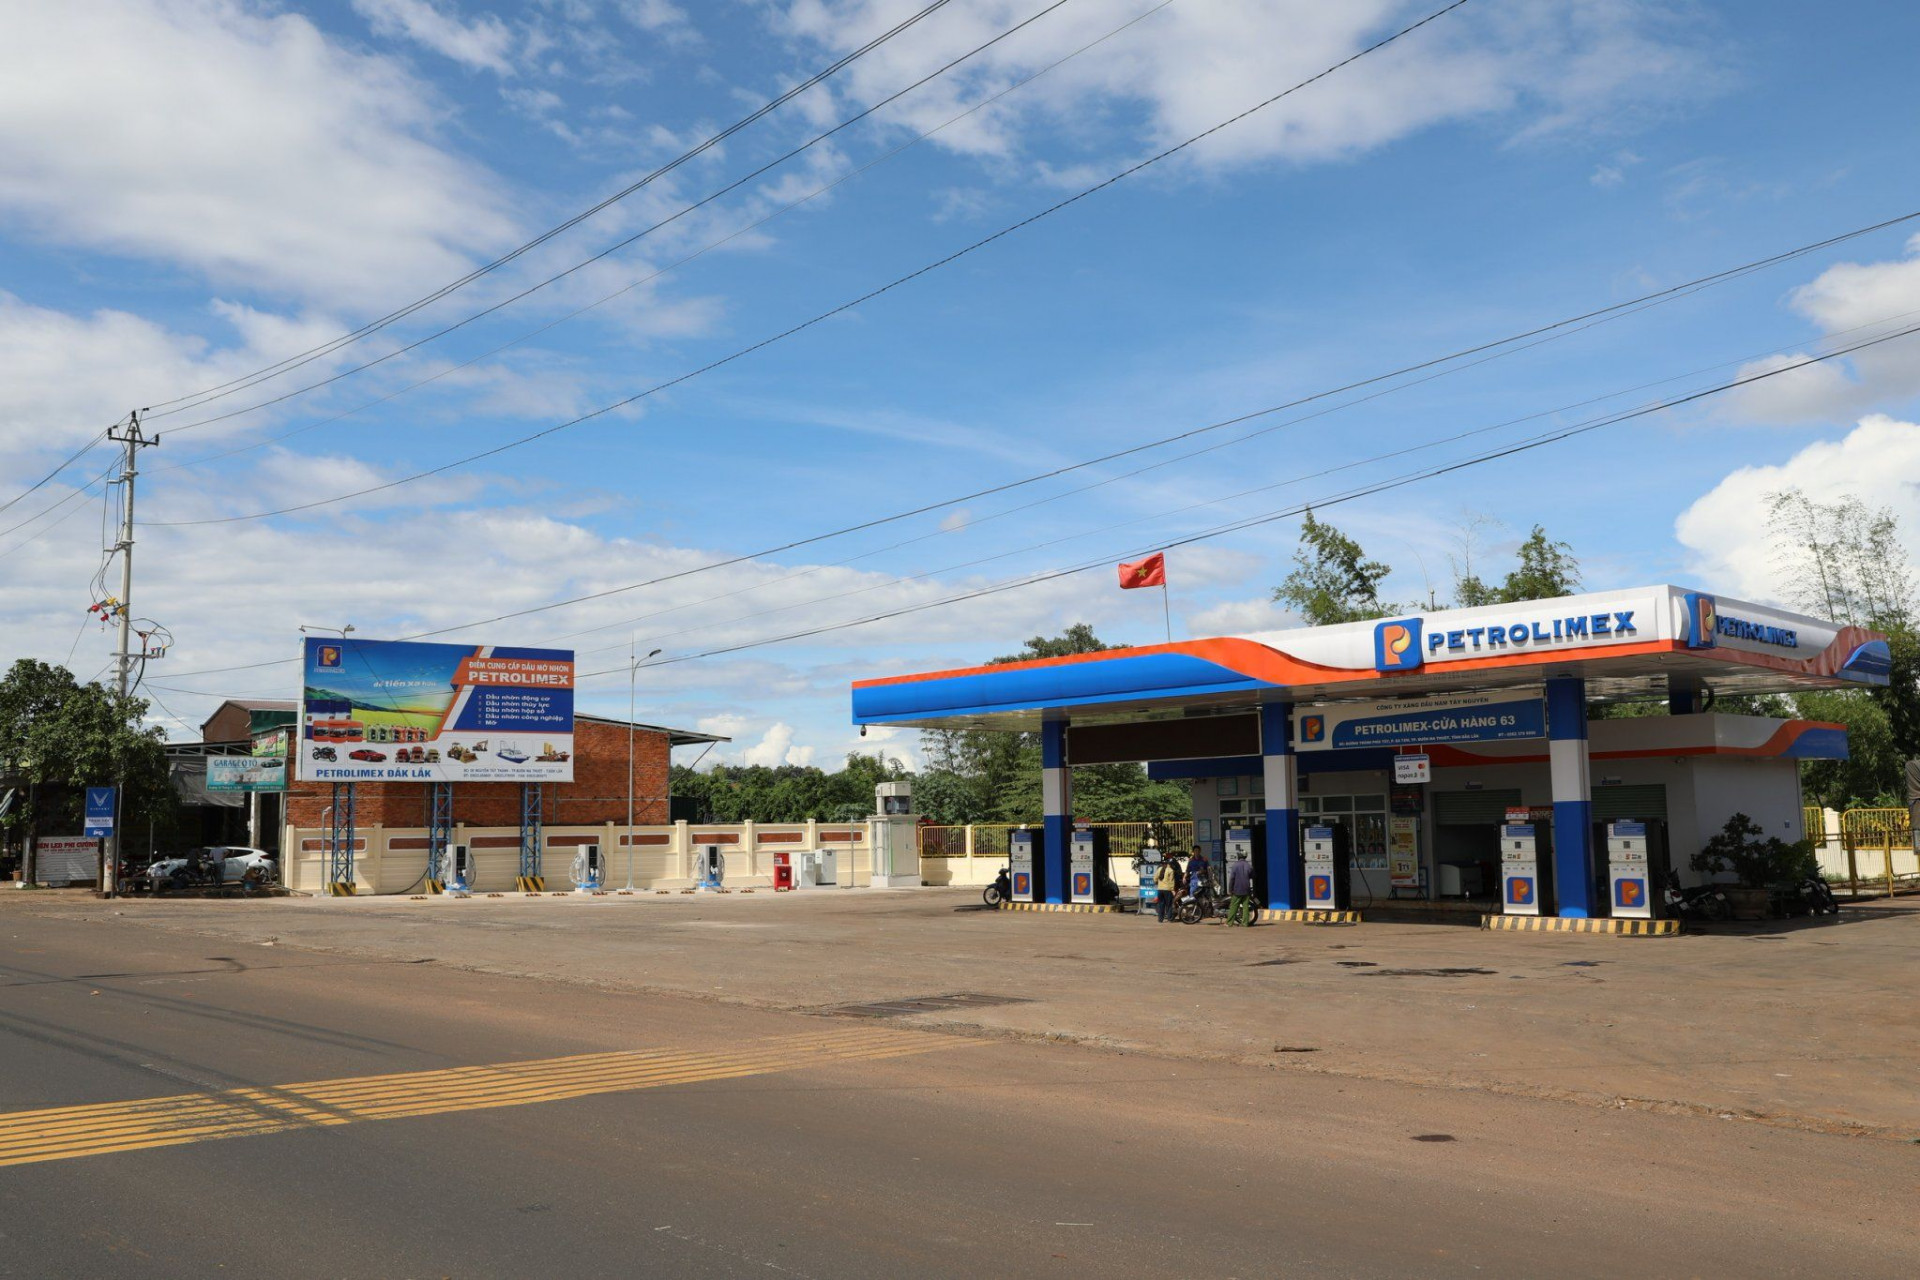 VinFast và Petrolimex đã đồng loạt đưa vào sử dụng 10 trạm sạc đầu tiên tại hệ thống cửa hàng xăng dầu Petrolimex trên toàn quốc từ ngày hôm nay.